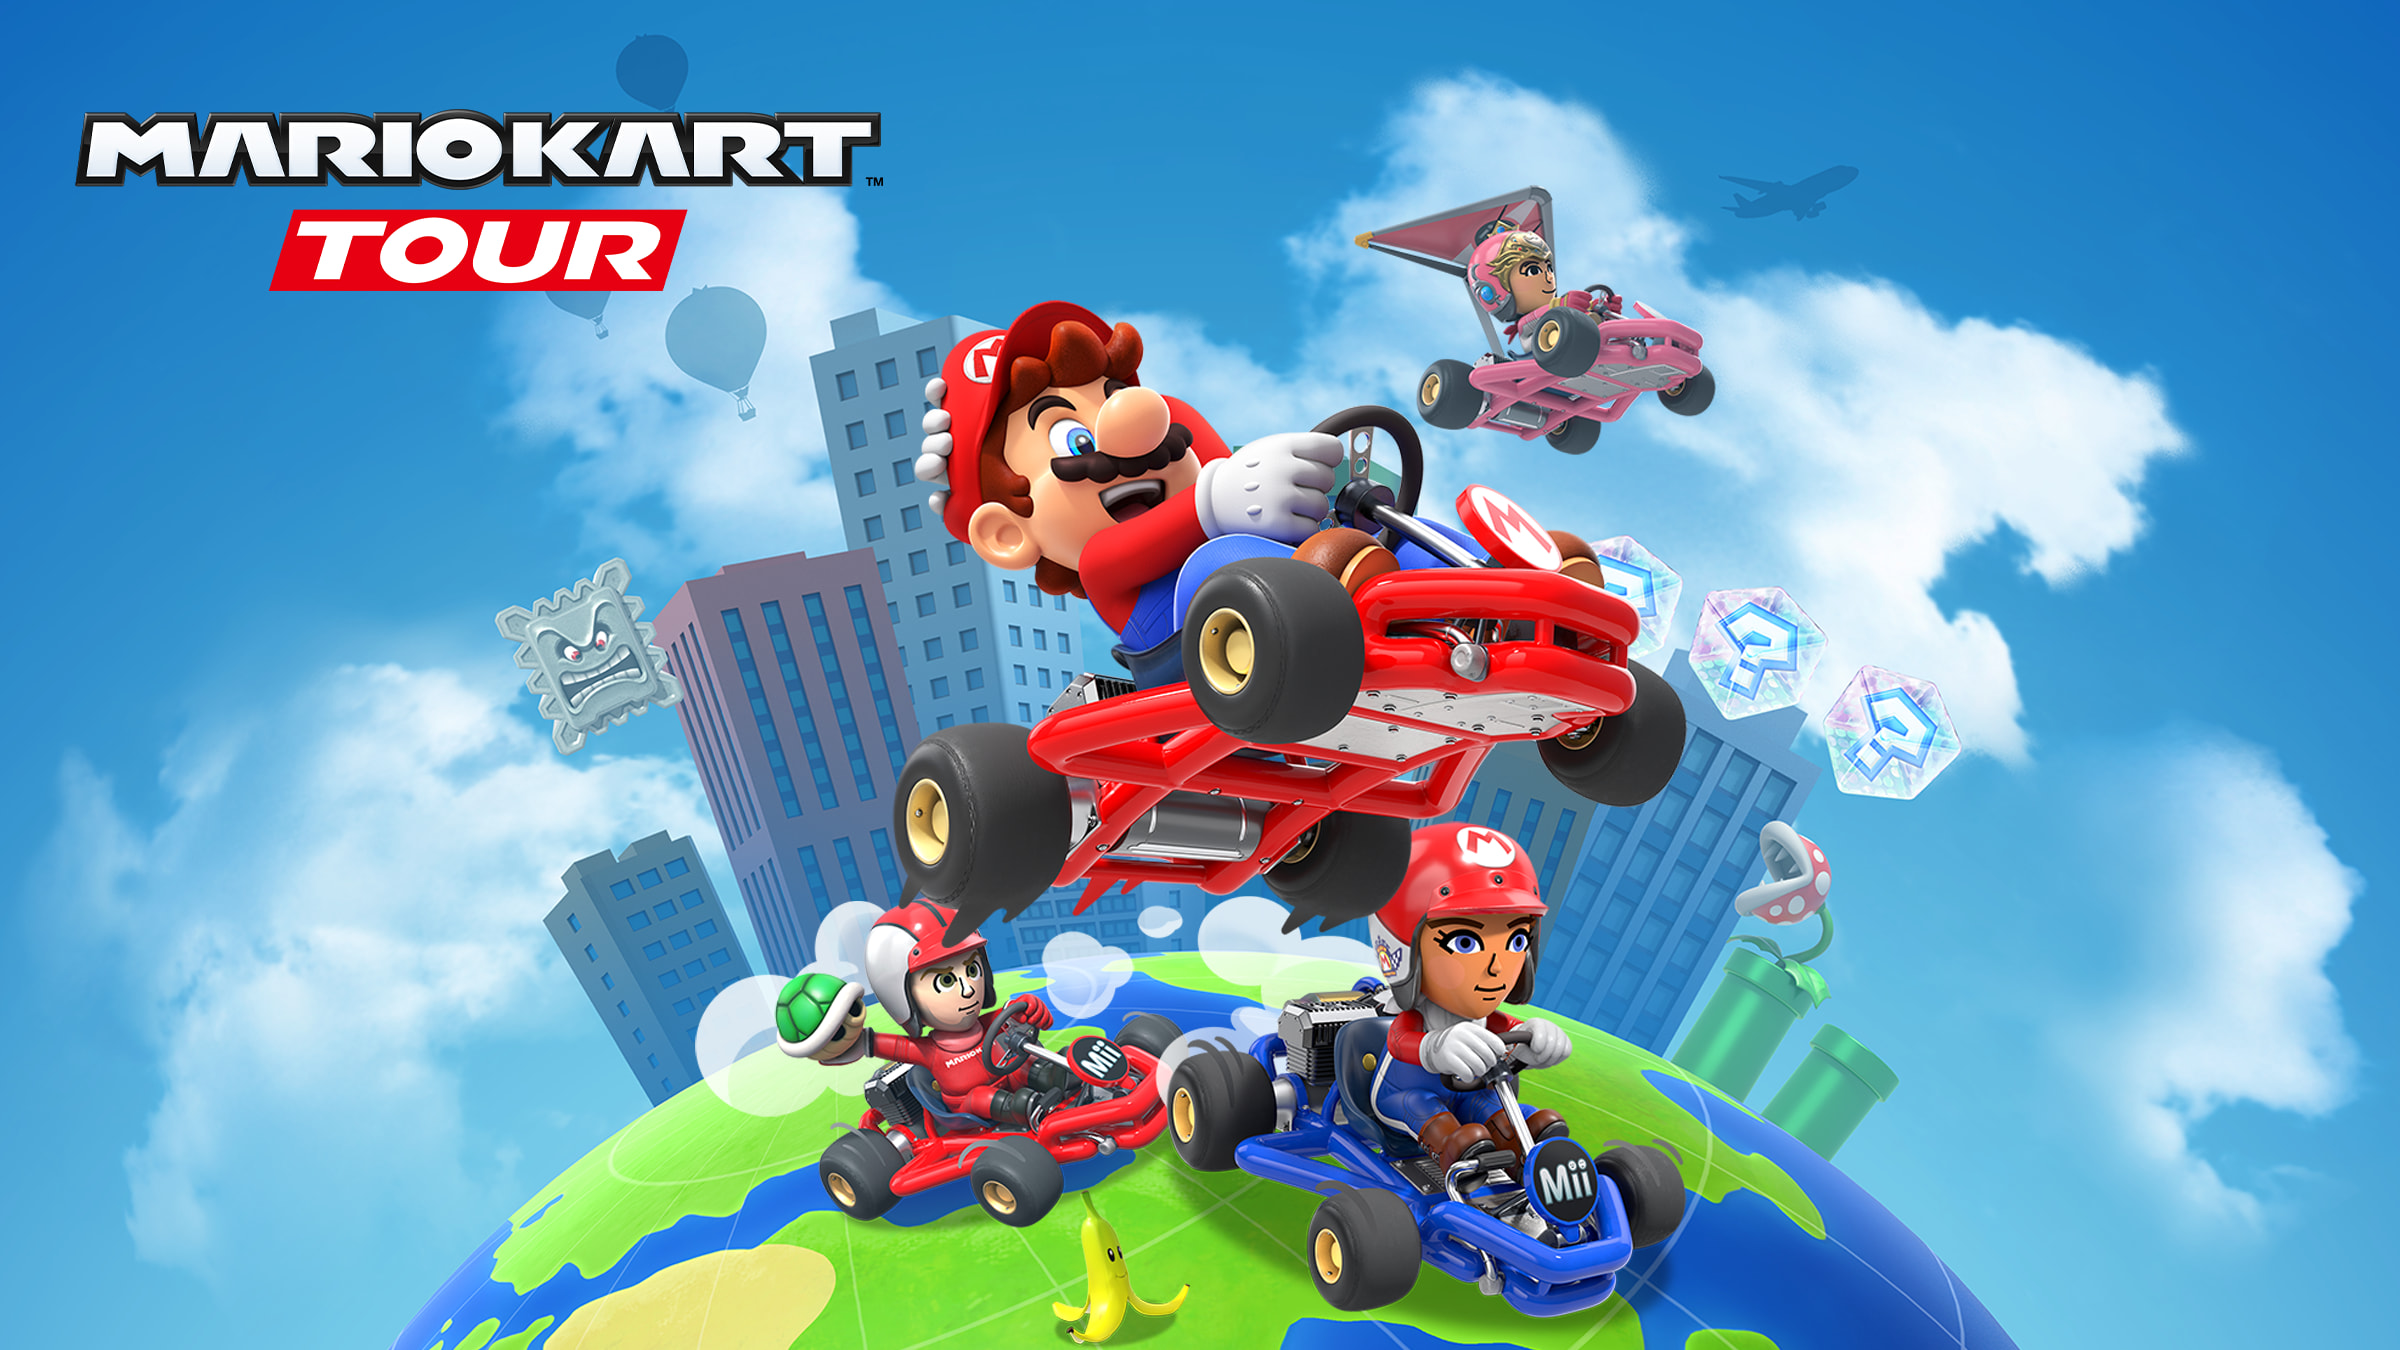 The Mii Tour begins in the Mario Kart Tour game